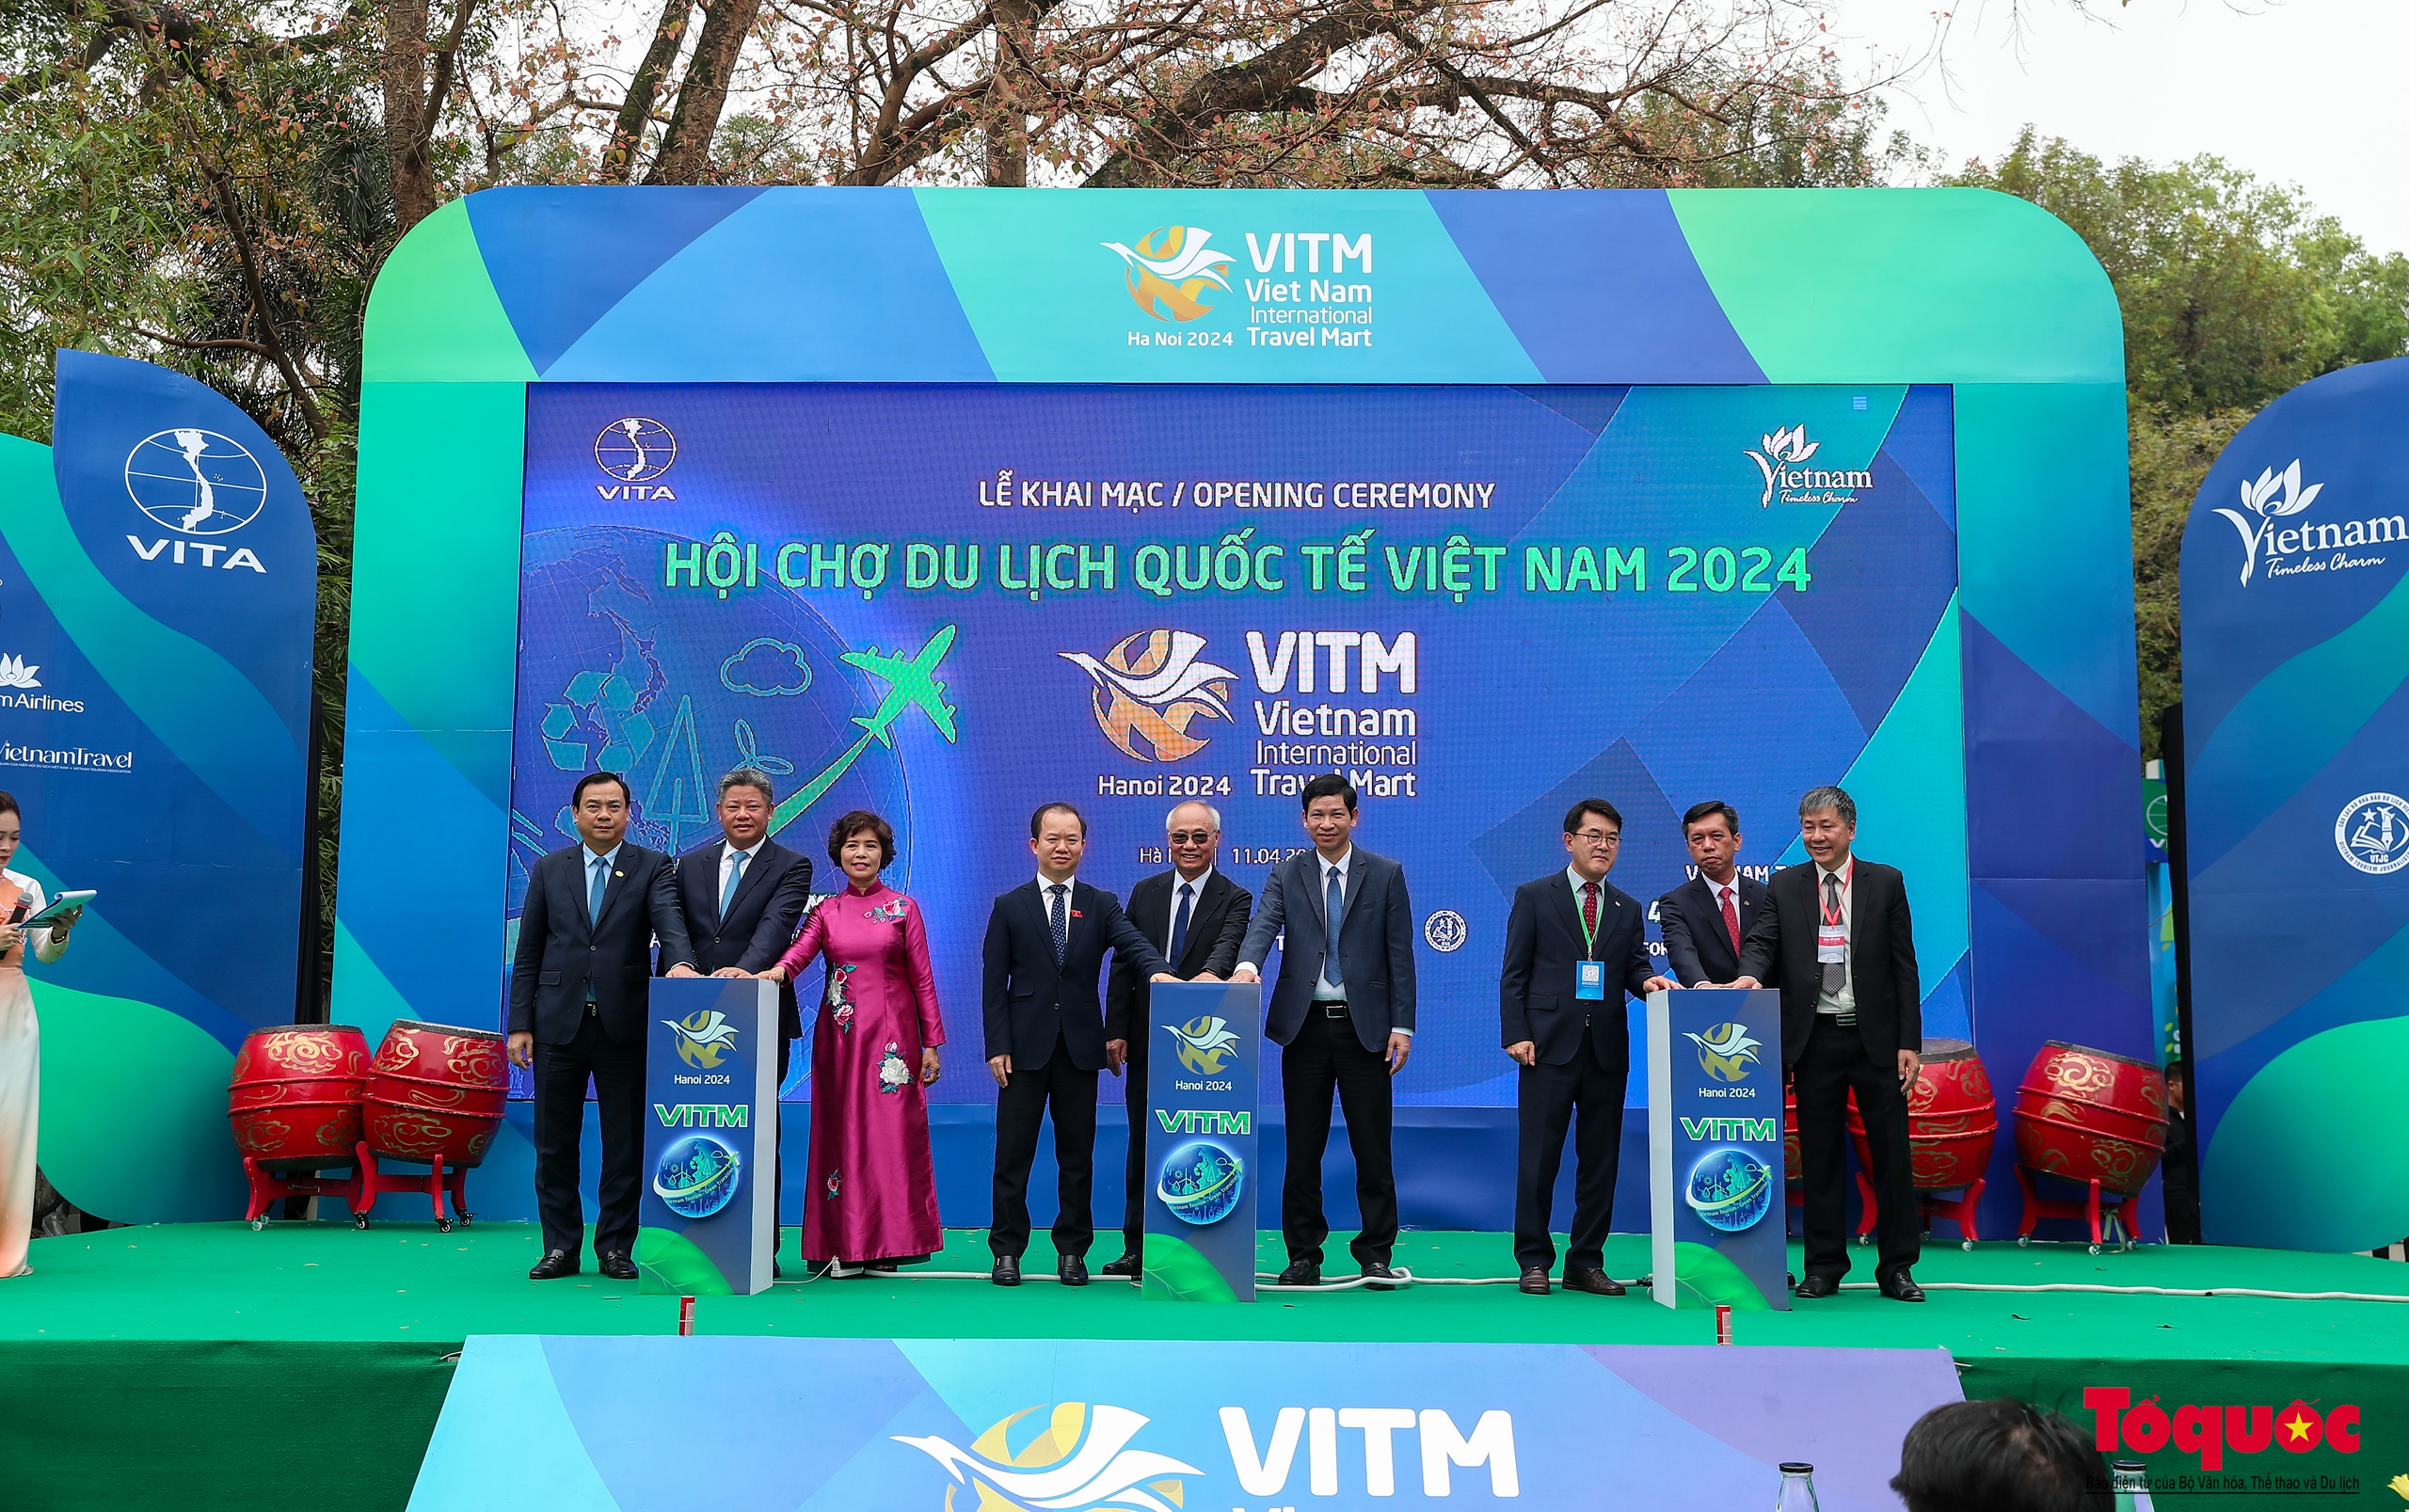 Chùm ảnh: Khai mạc Hội chợ Du lịch Quốc tế Việt Nam - VITM Hà Nội 2024 - Ảnh 4.